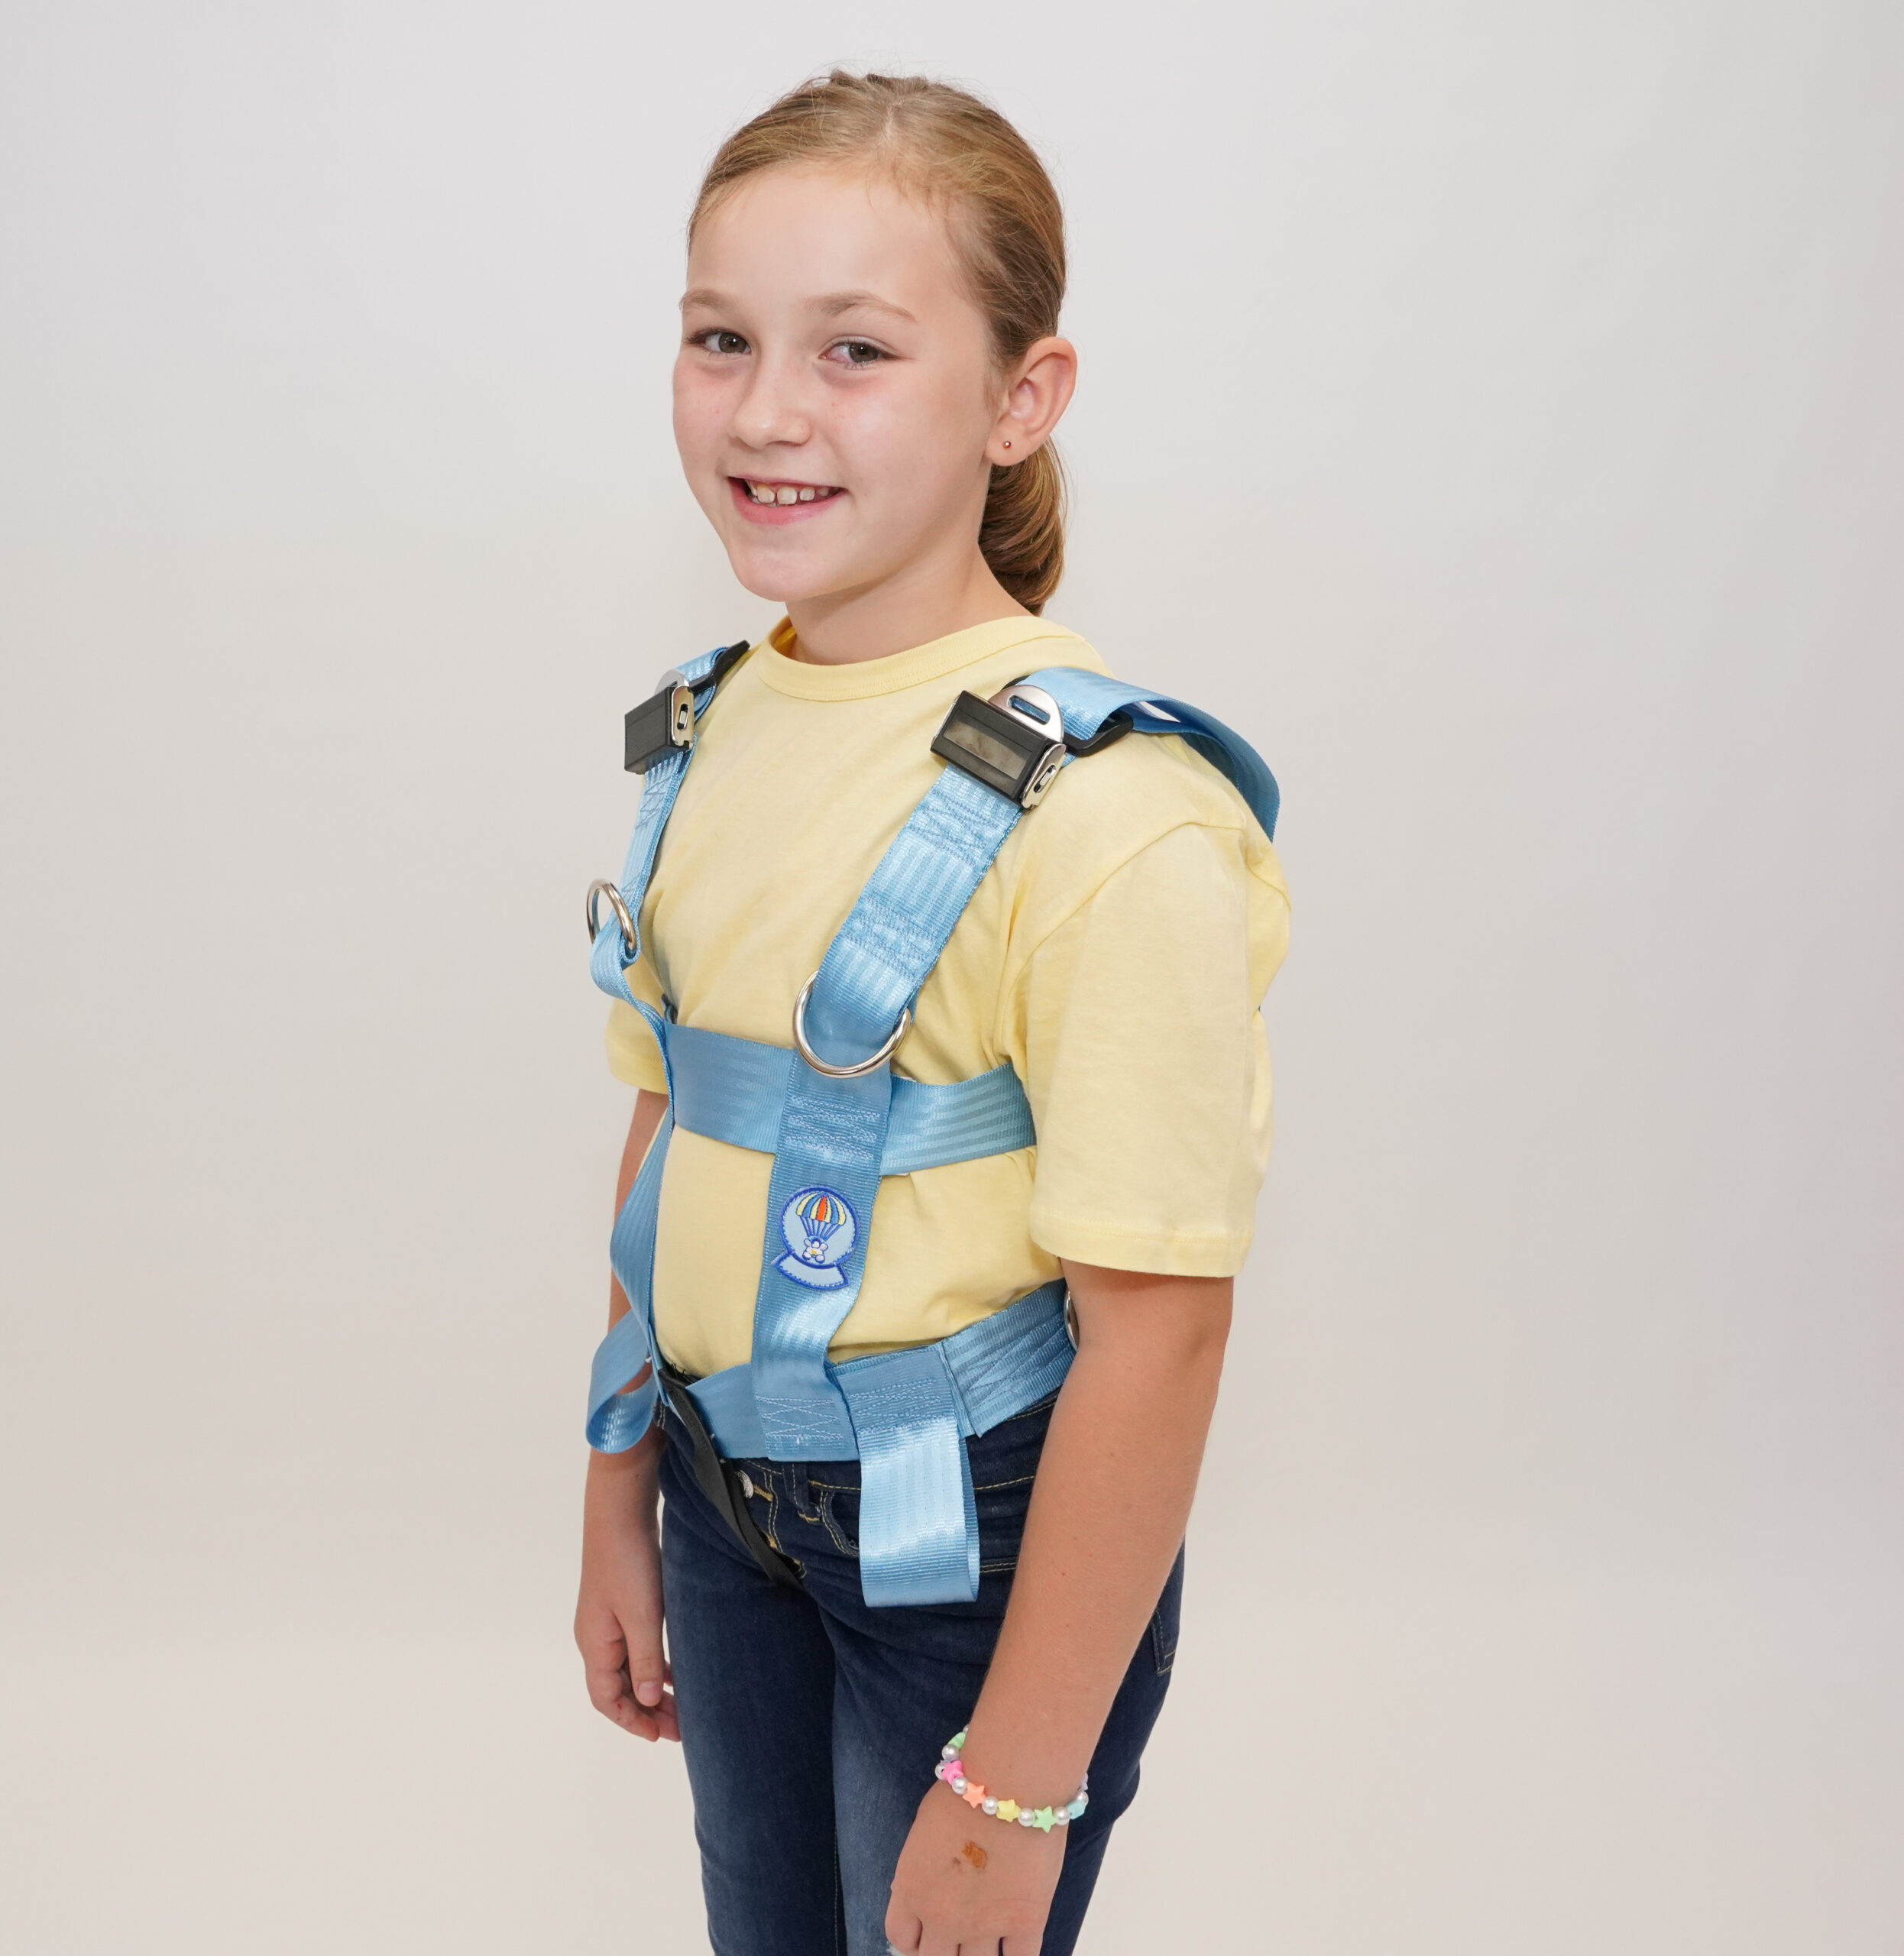 EZ-ON Adjustable Harness Vest for School Buses